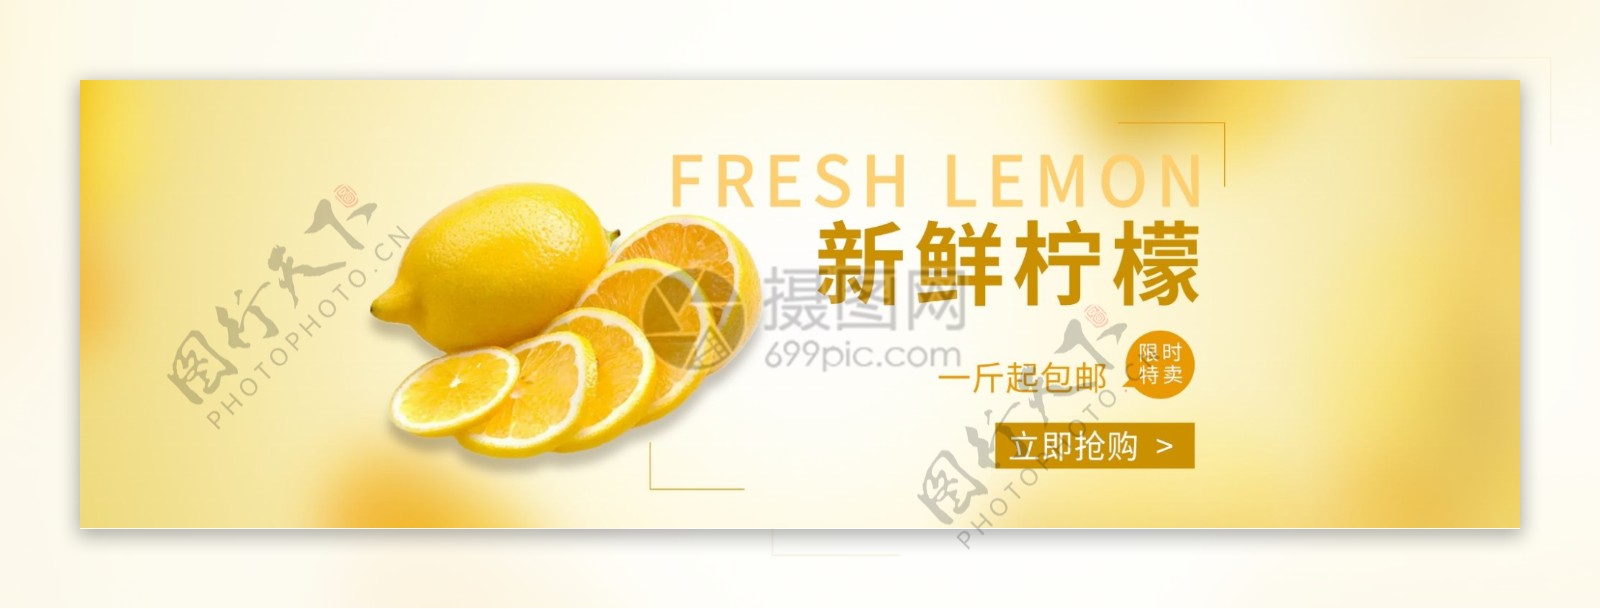 新鲜柠檬水果banner设计